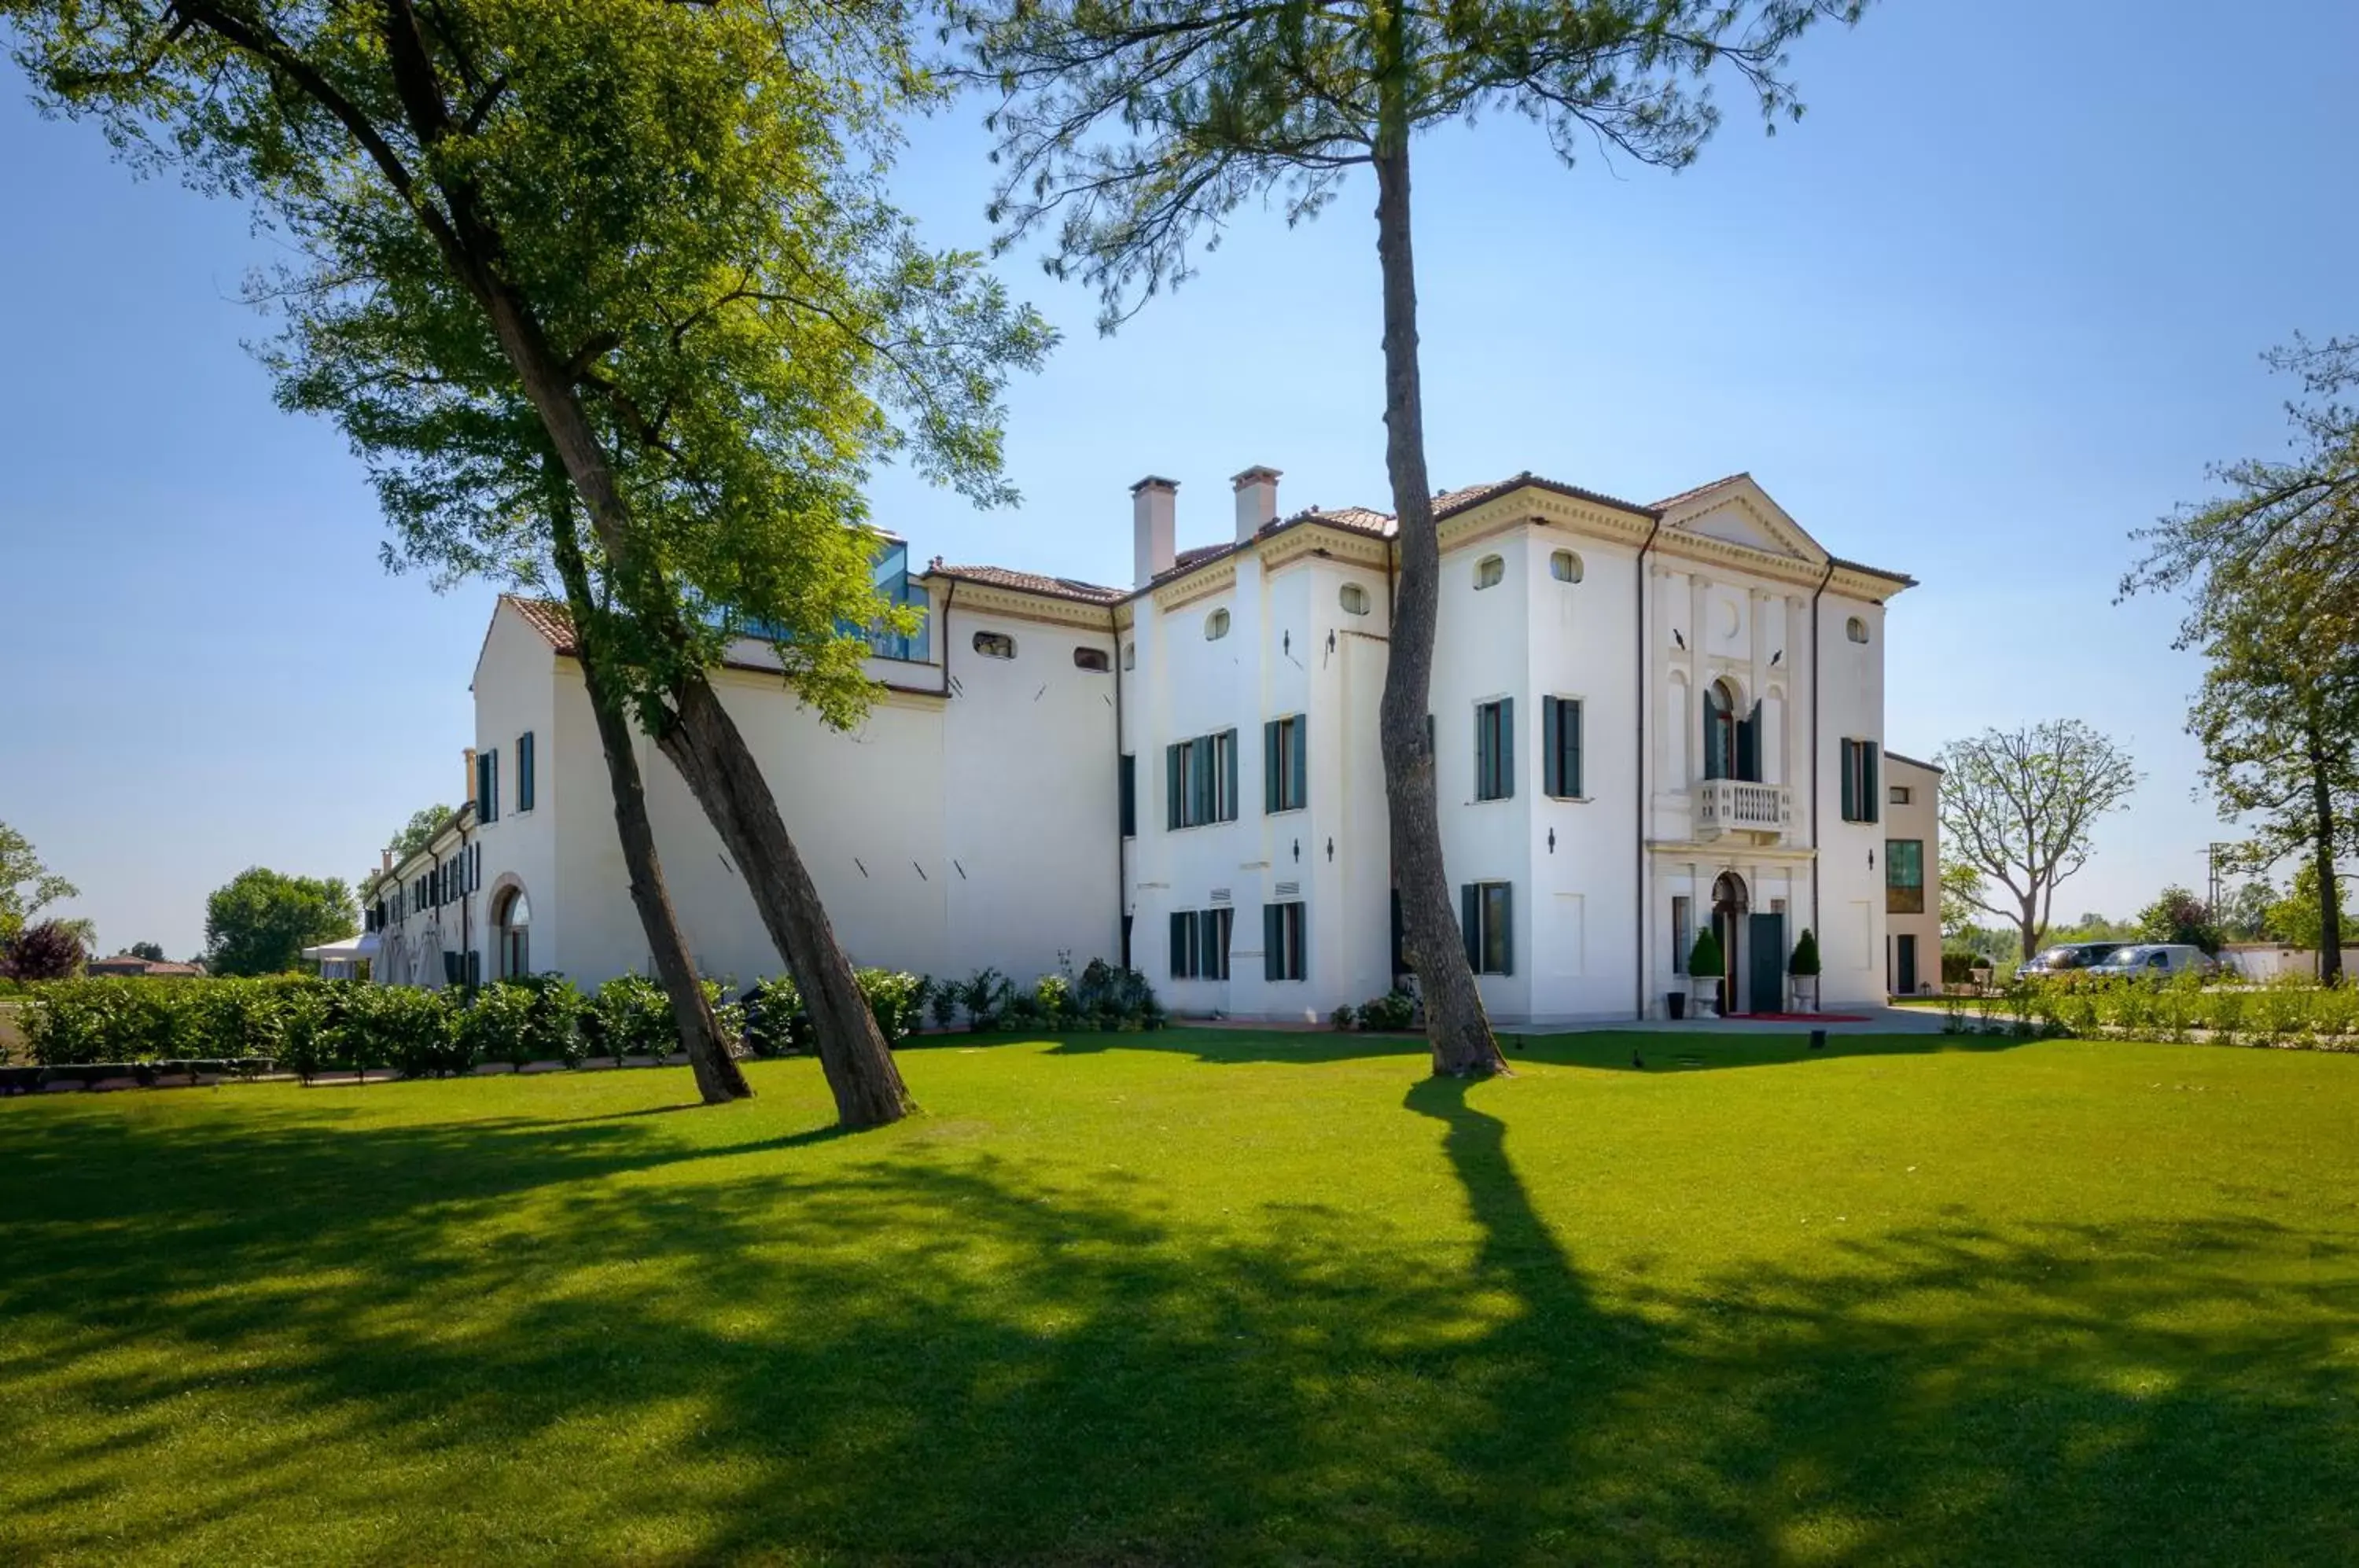 Garden view, Property Building in Hotel Villa Barbarich Venice Mestre